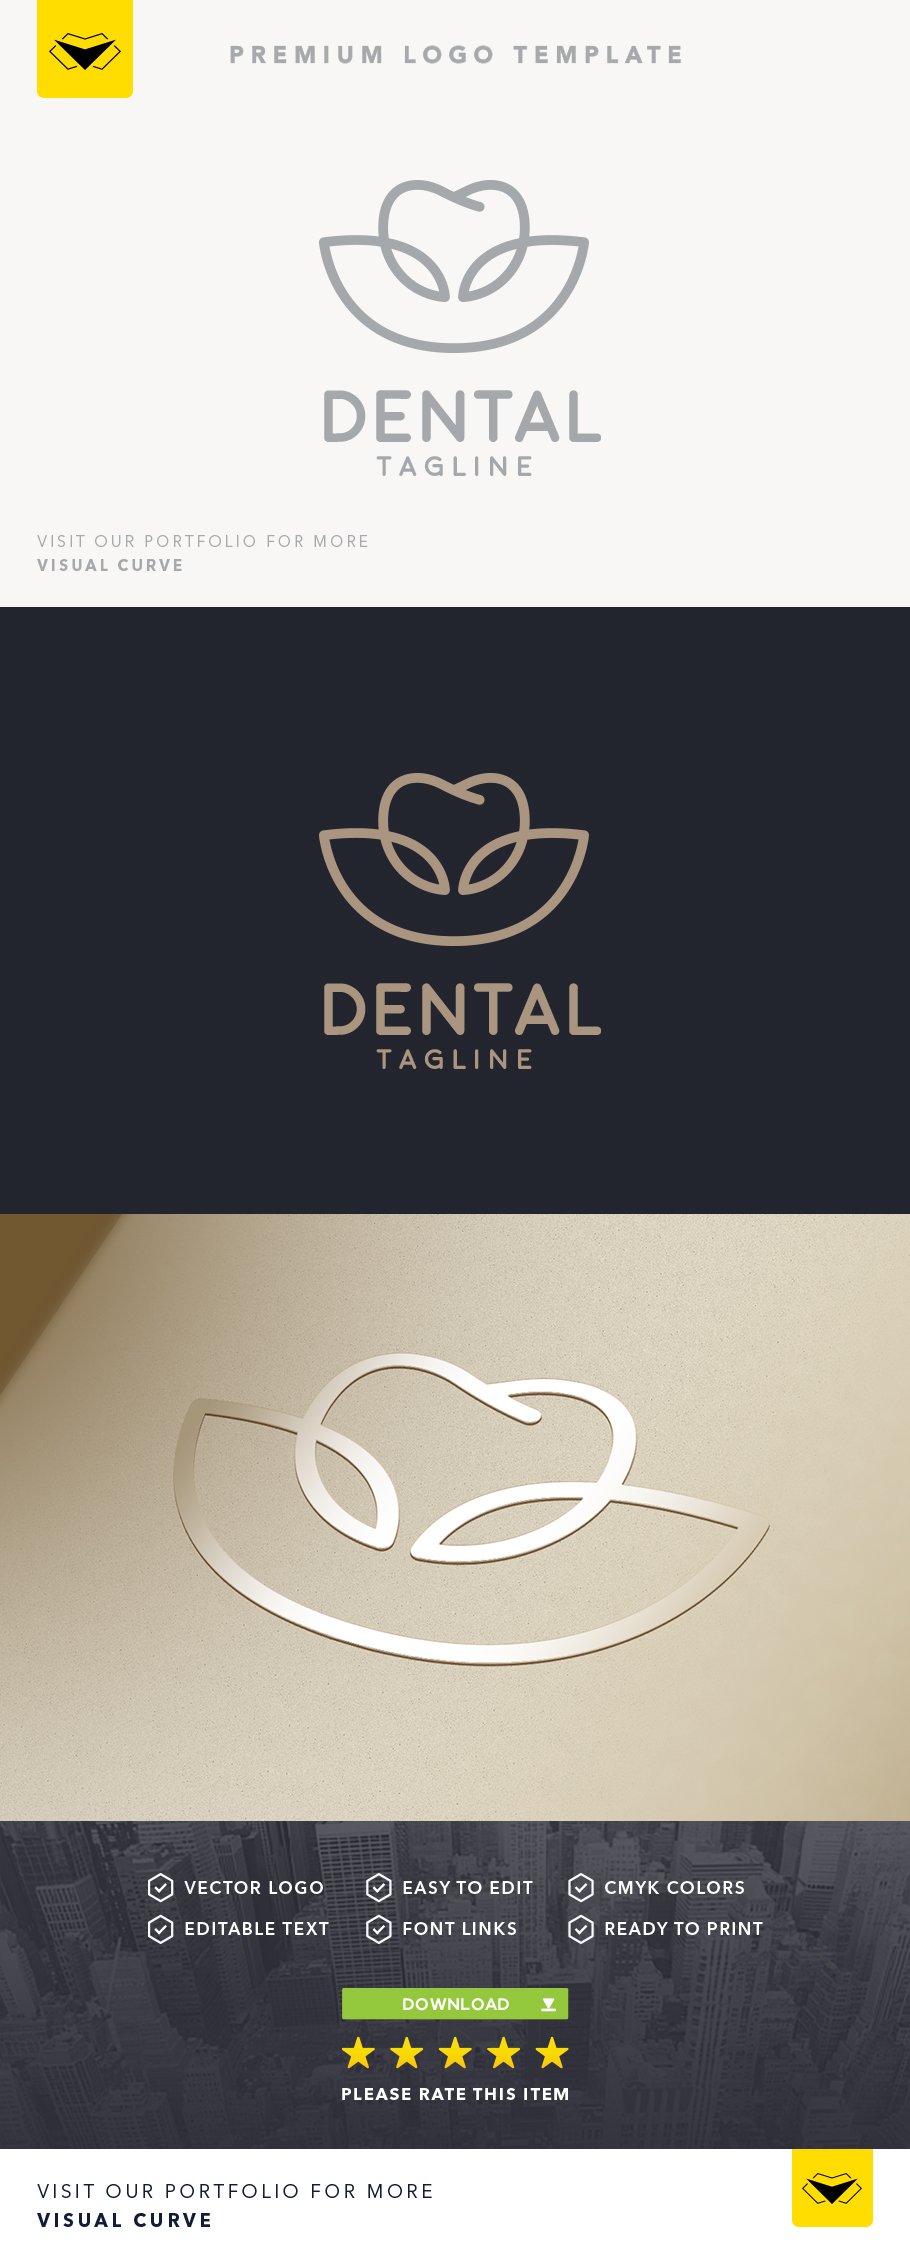 dental logo 01a 343